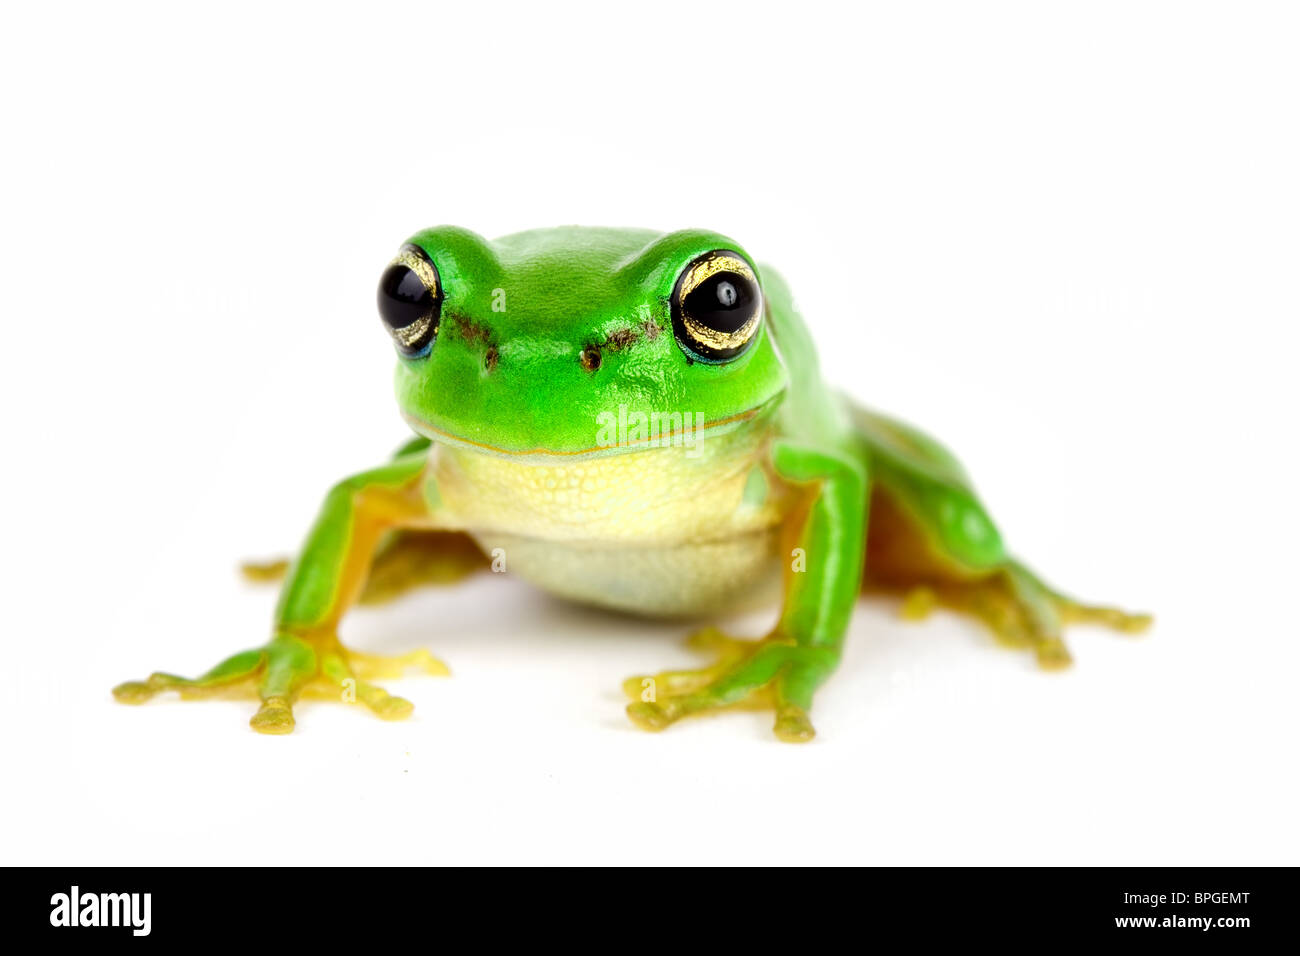 Petite grenouille sur fond blanc - close-up Banque D'Images